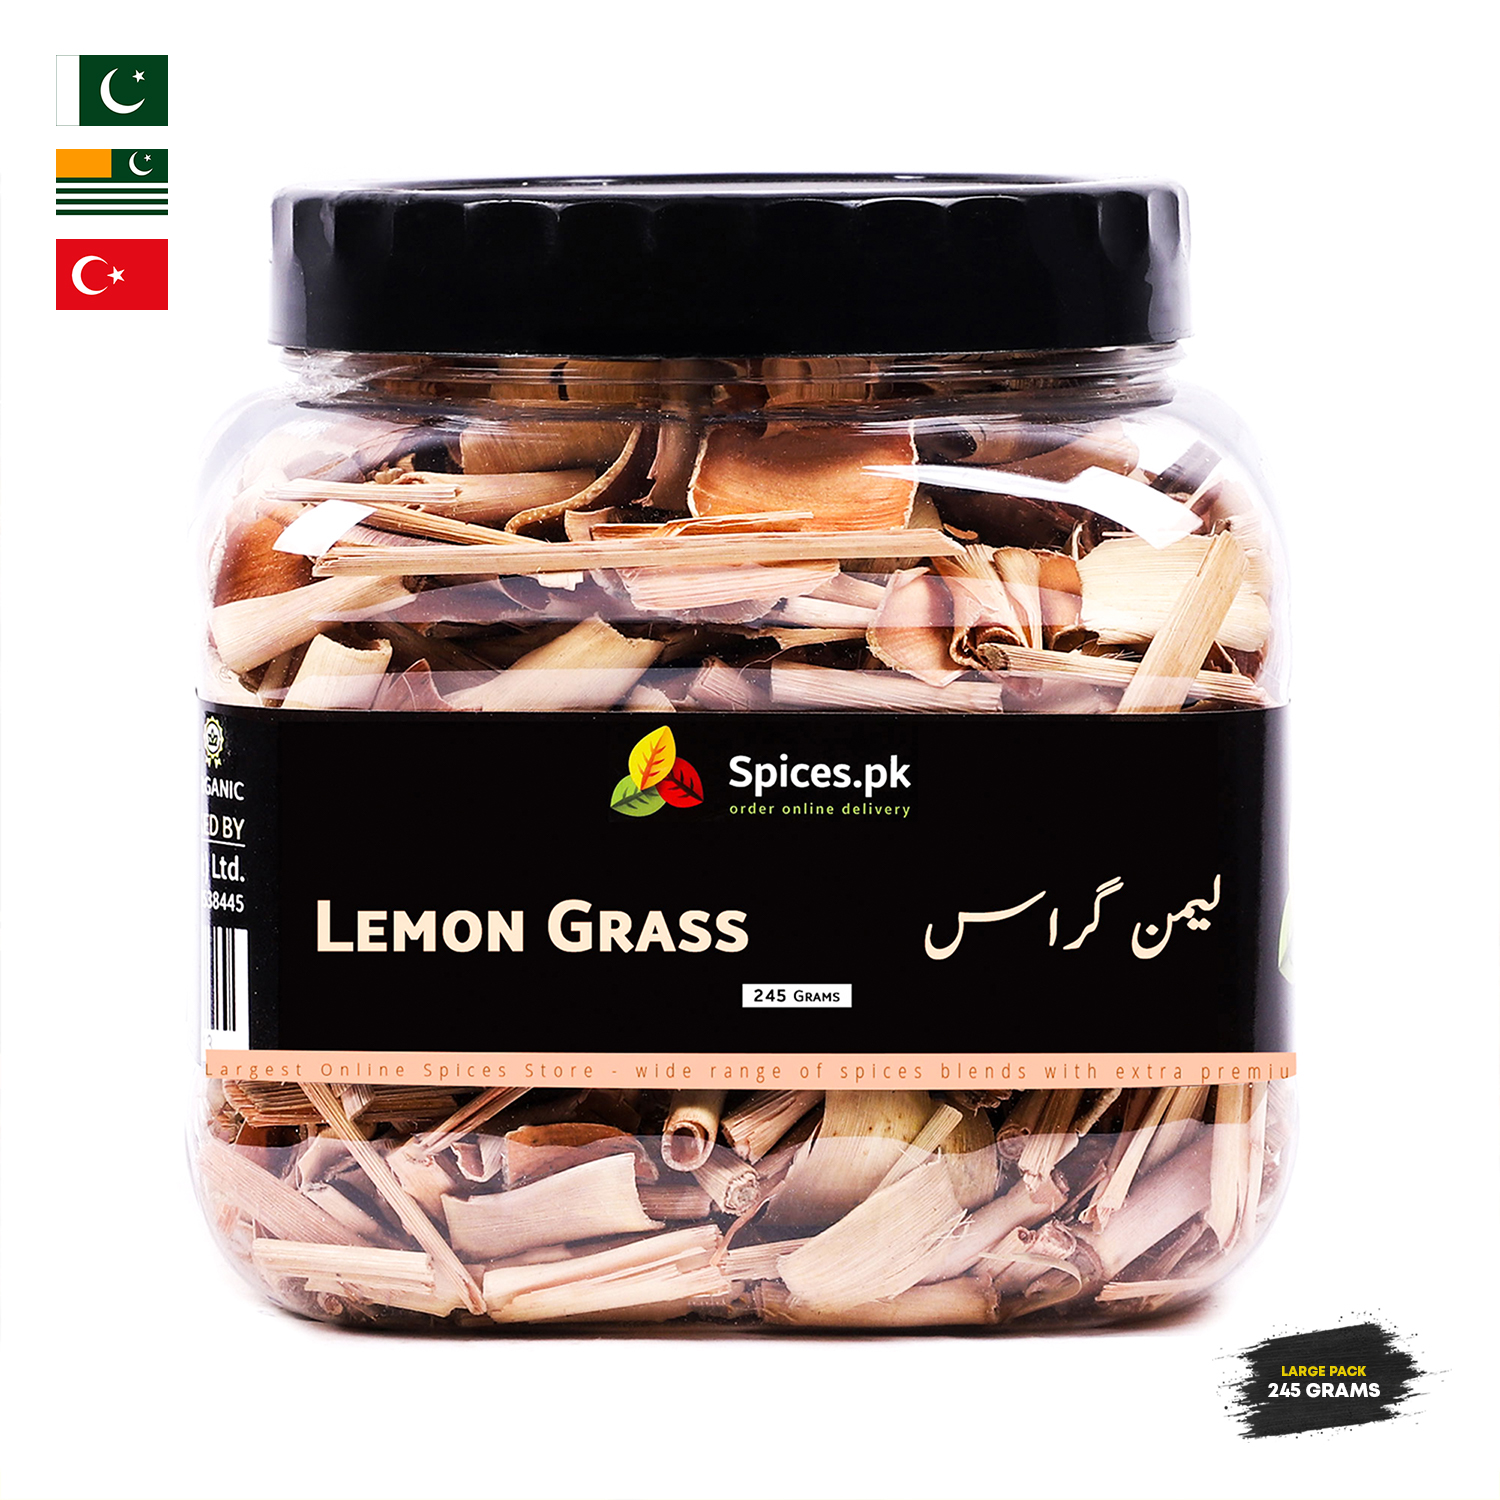 Spices.pk Lemon Grass Tea / Kahwa / Green Tea / Weight Loss Lemon Grass Green Tea Wt.245gm